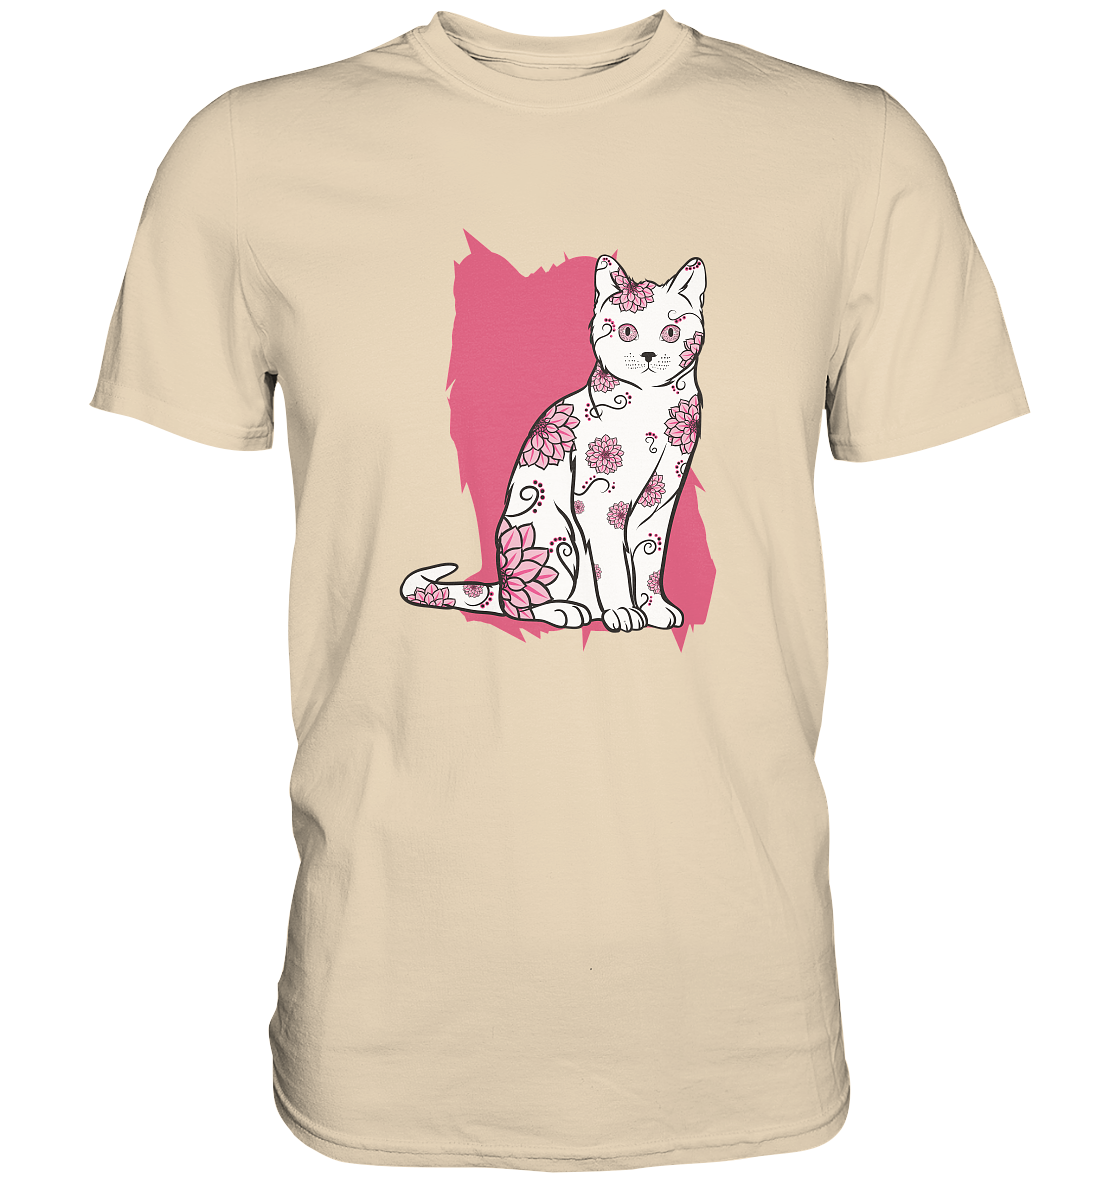 Flower Cat. Katze mit Blumen - Unisex Premium Shirt